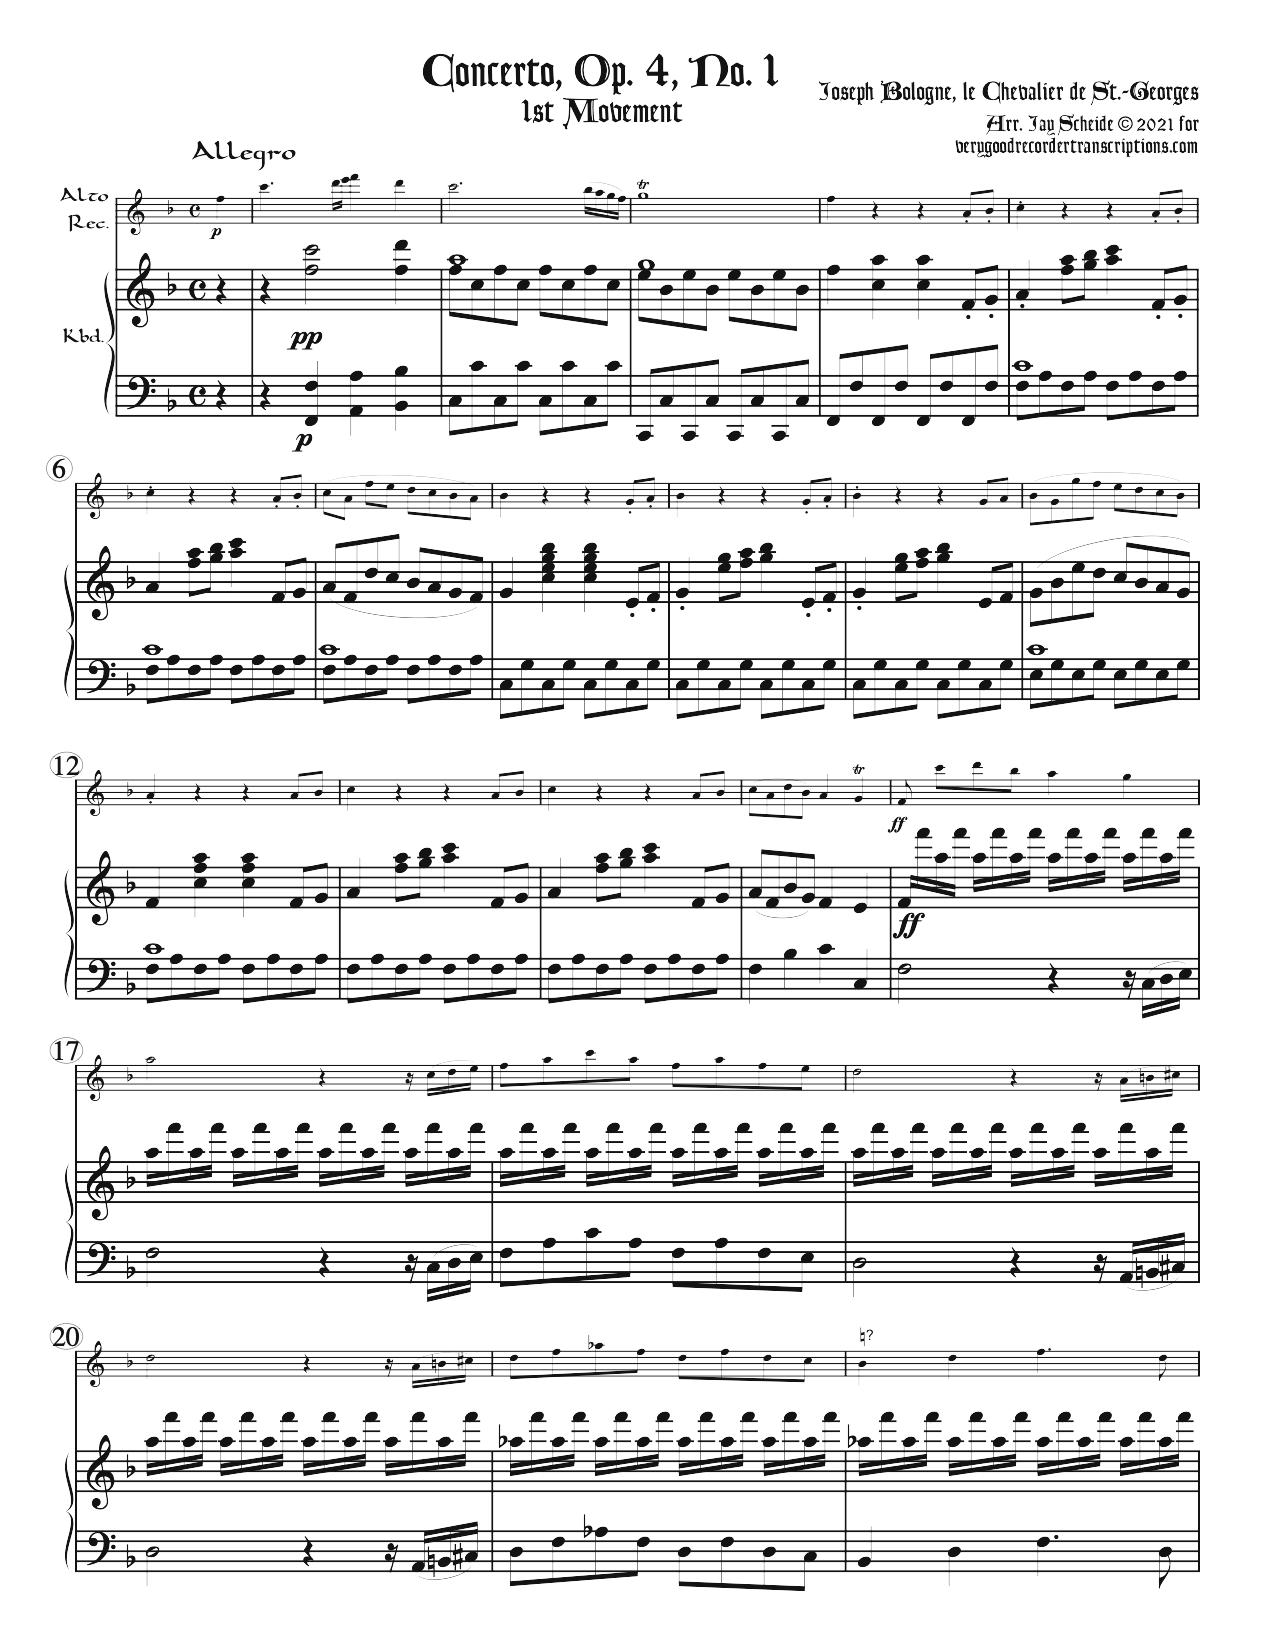 Concerto, Op. 4, No. 1